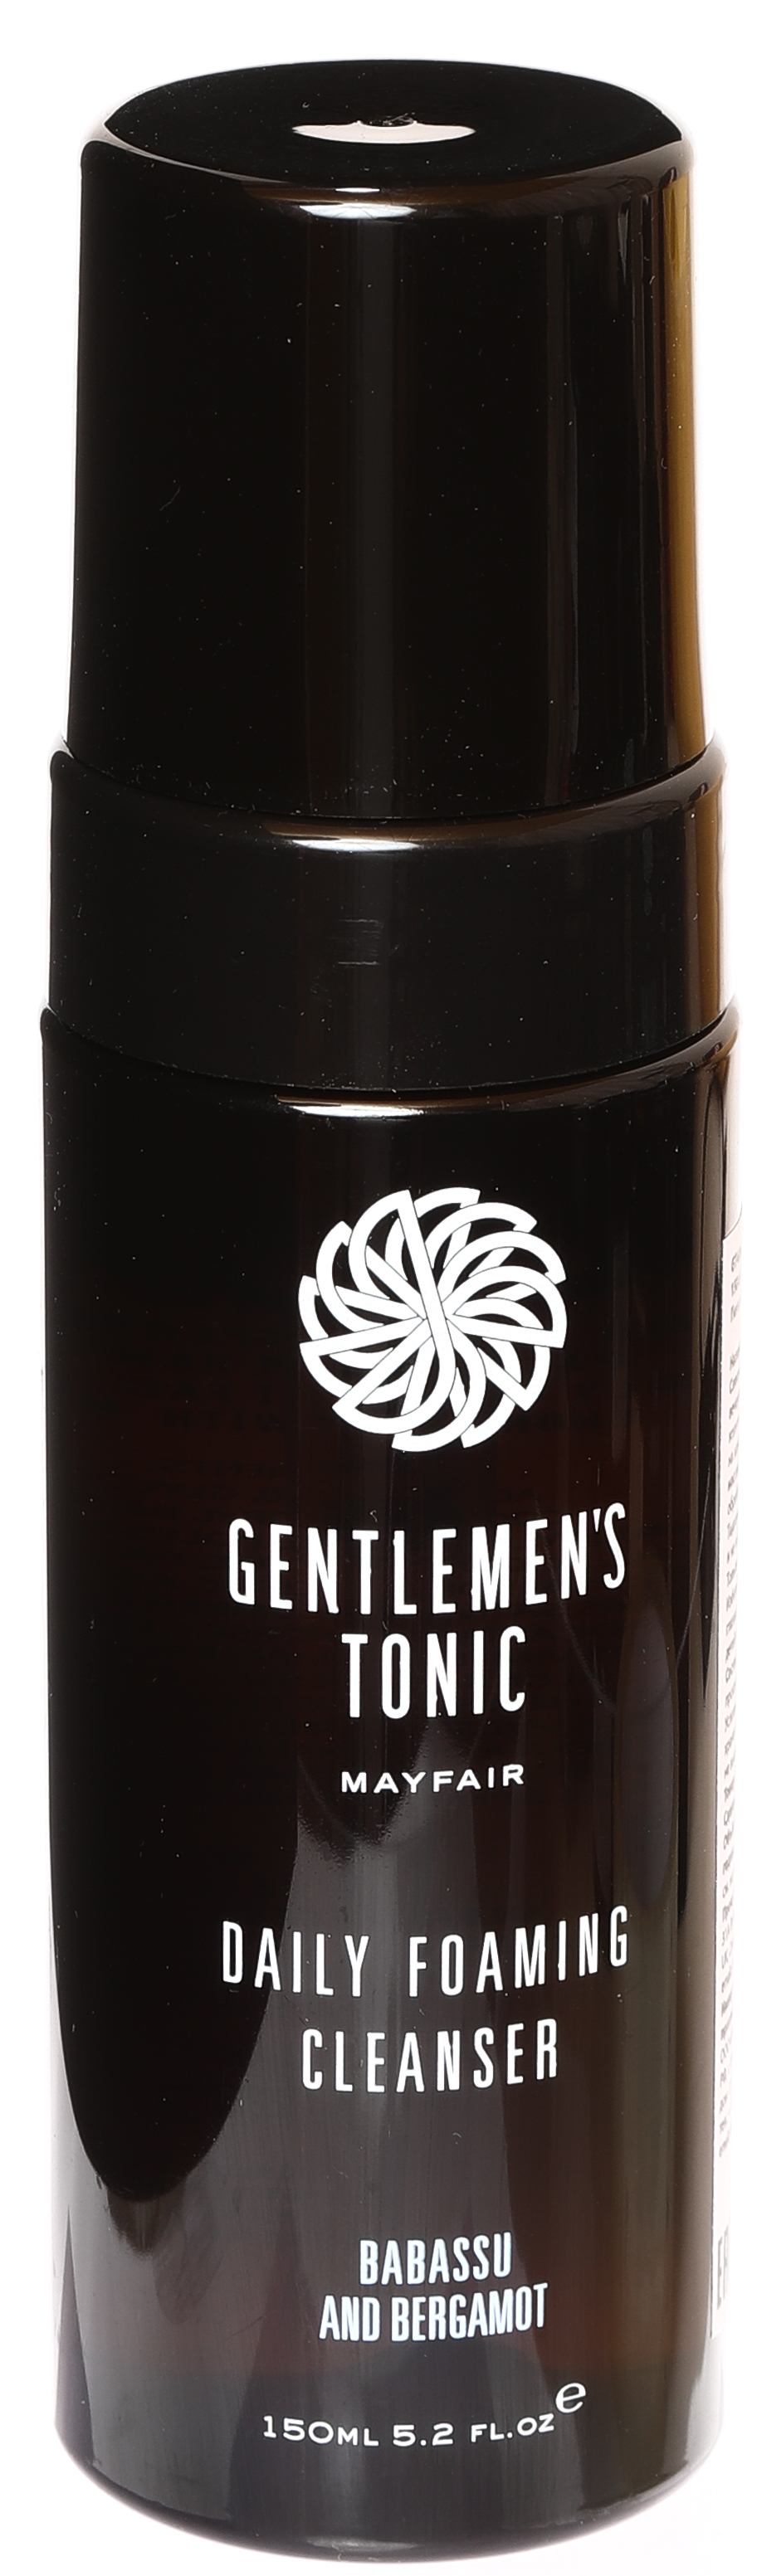 Пенка для умывания очищающая для мужчин Gentlemen's Tonic 150 мл givenchy gentlemen only eau de toilette 150